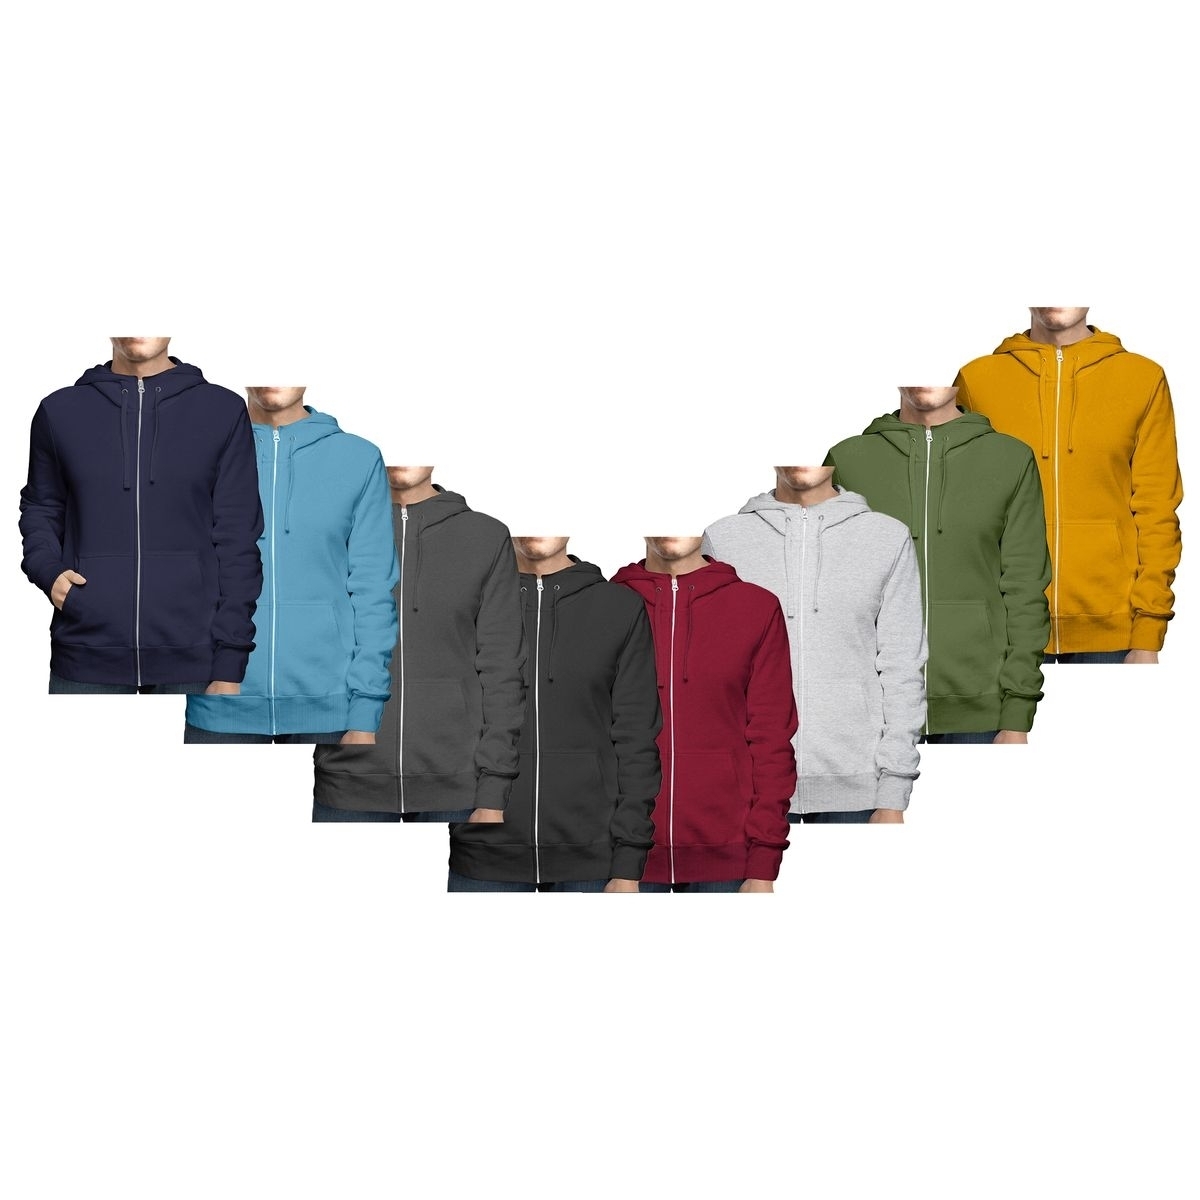 2-Pack: Men's Winter Warm Soft Cozy Full Zip-Up Fleece Lined Hoodie Sweatshirt - Large